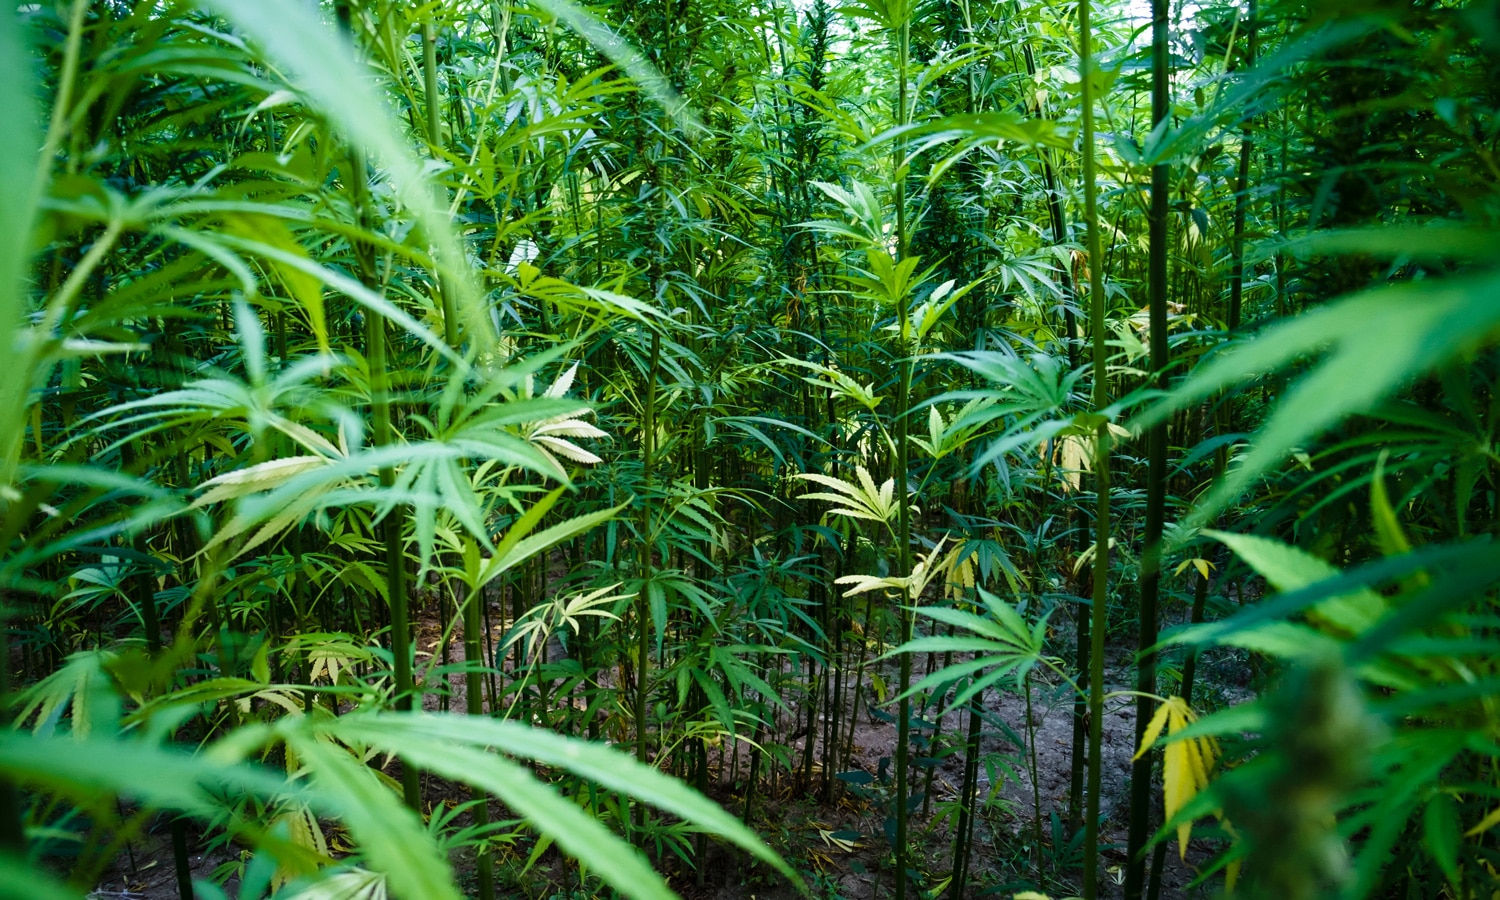 Legal marijuana States Buying 'Nasal Rangers' To Detect Illegal Grows